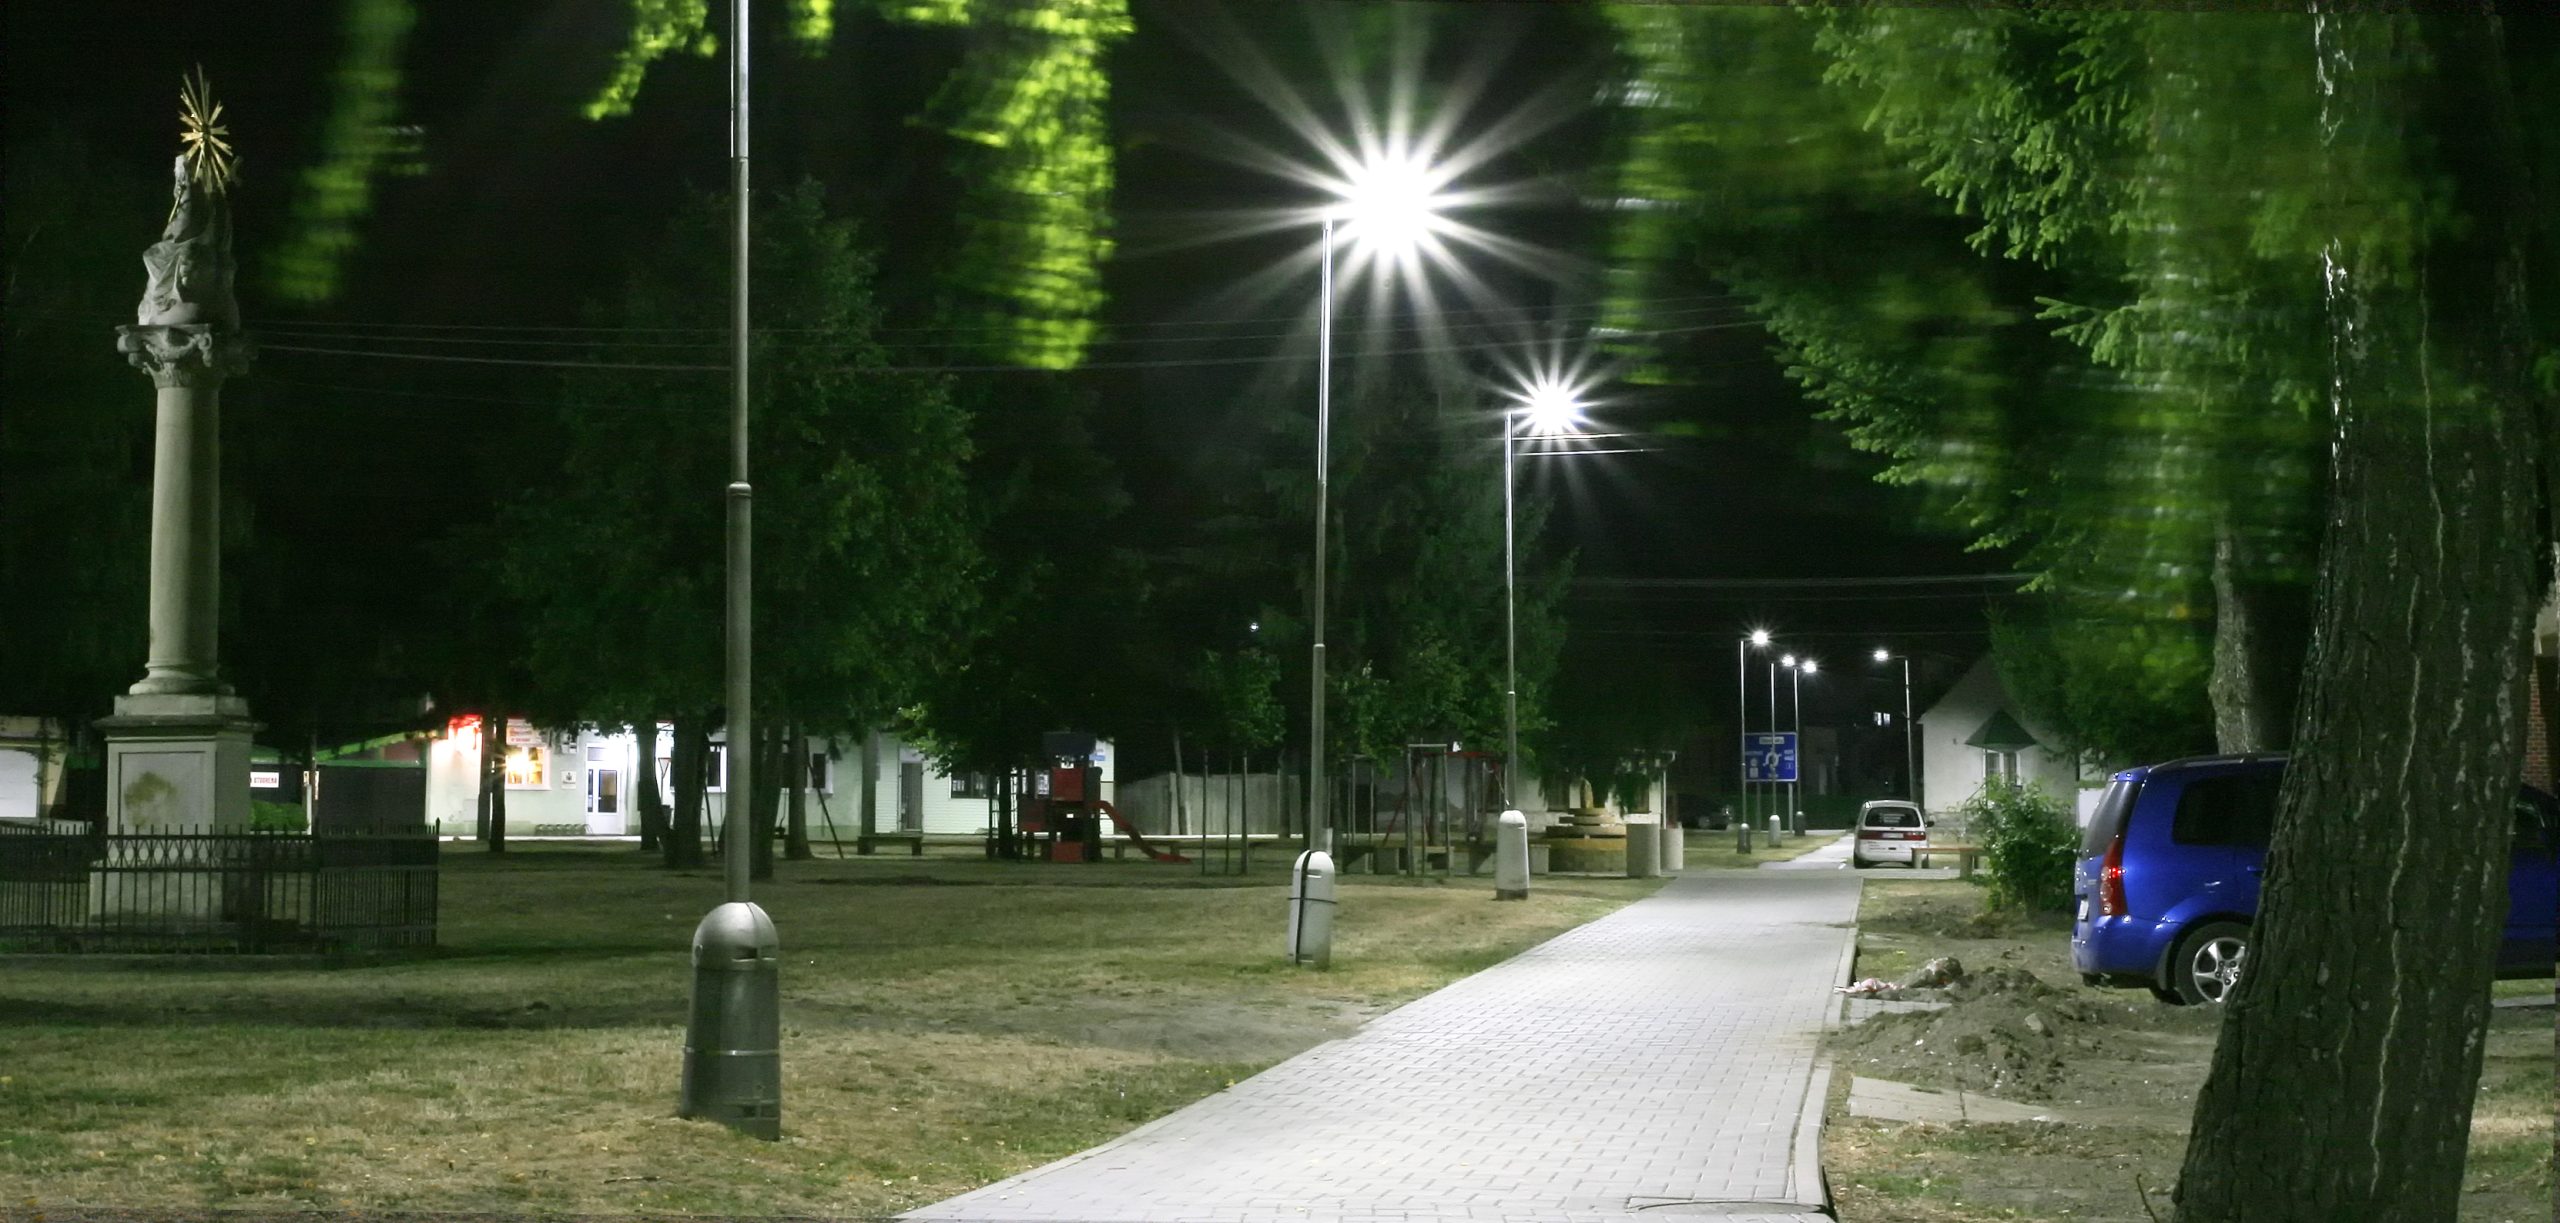 Rekonstrukce veřejného osvětlení ve městě Gbely